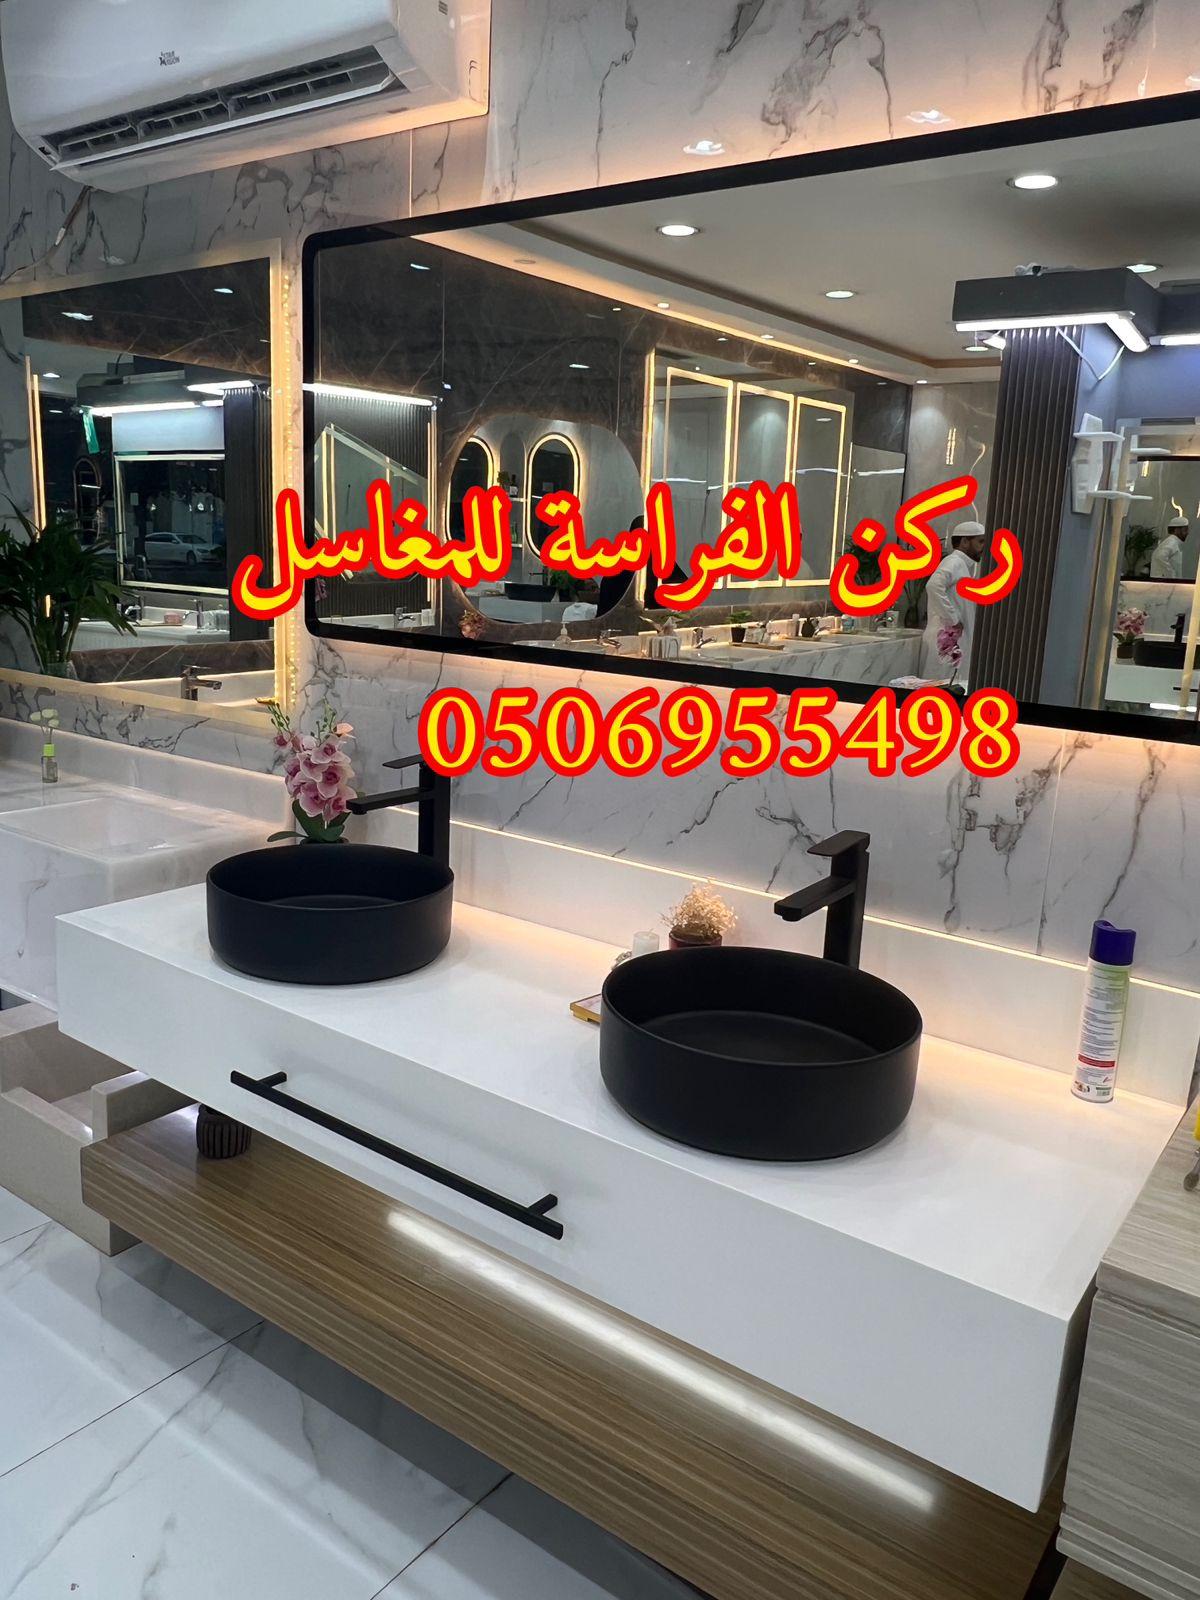 الرياض - تفصيل ديكورات مغاسل حمامات رخام في الرياض,0506955498 271771221